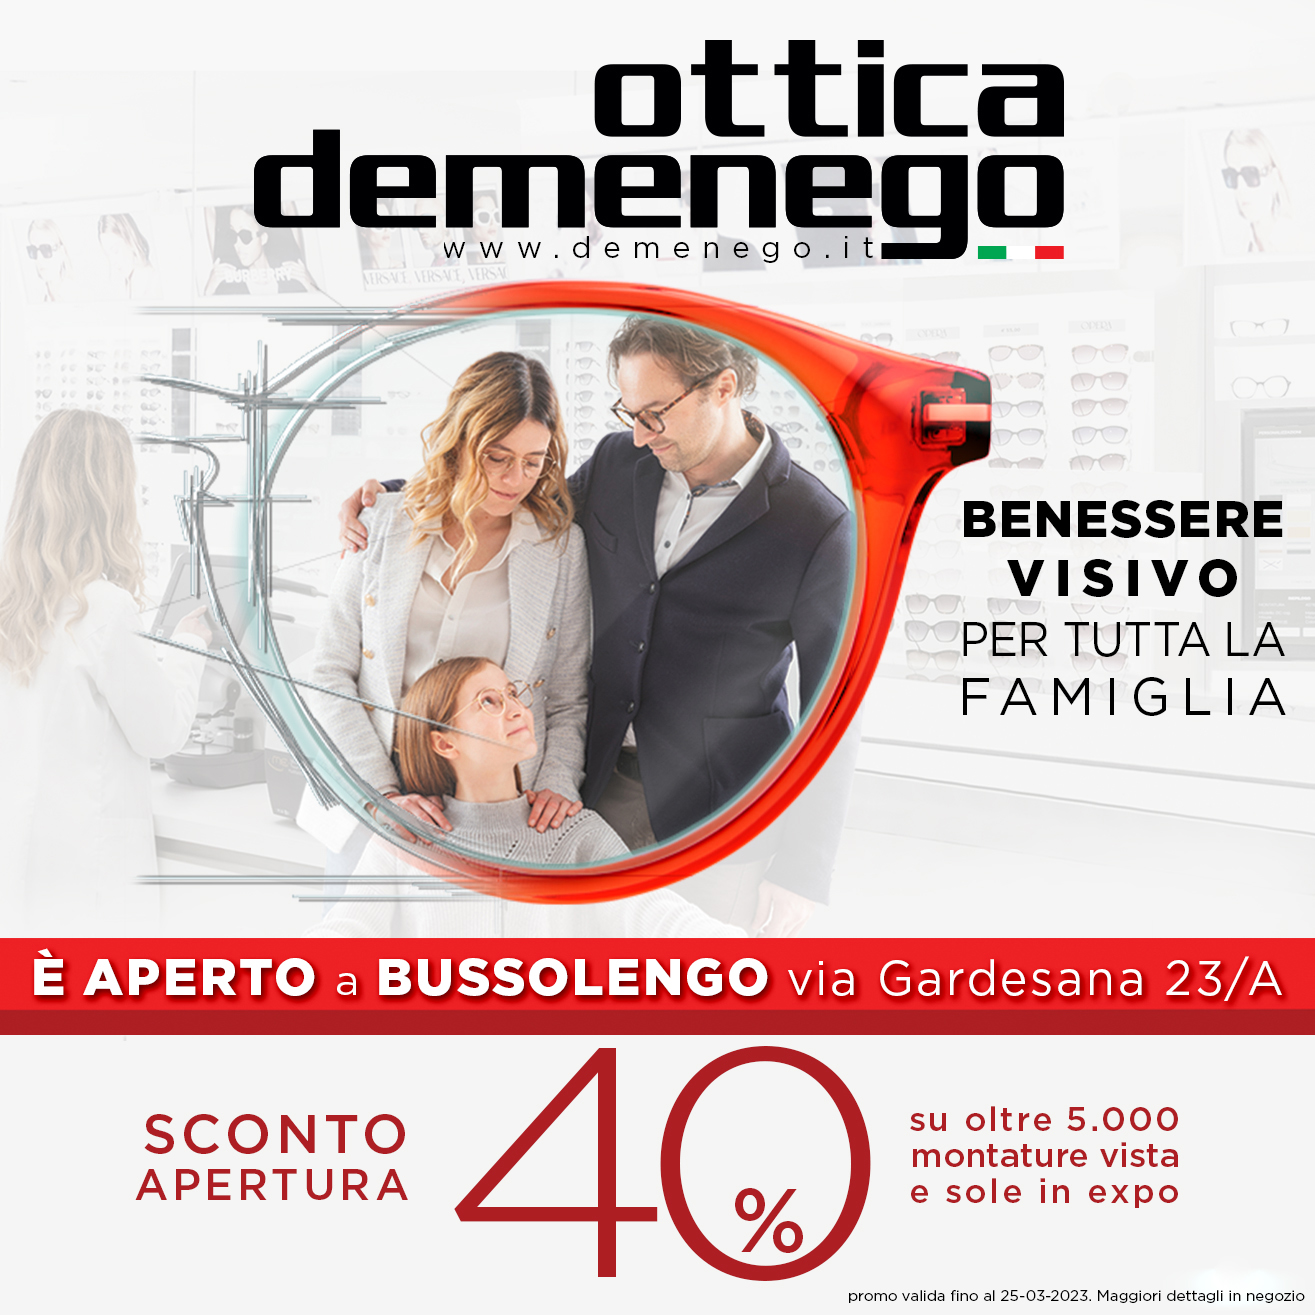 Newly opened Demenego Optics